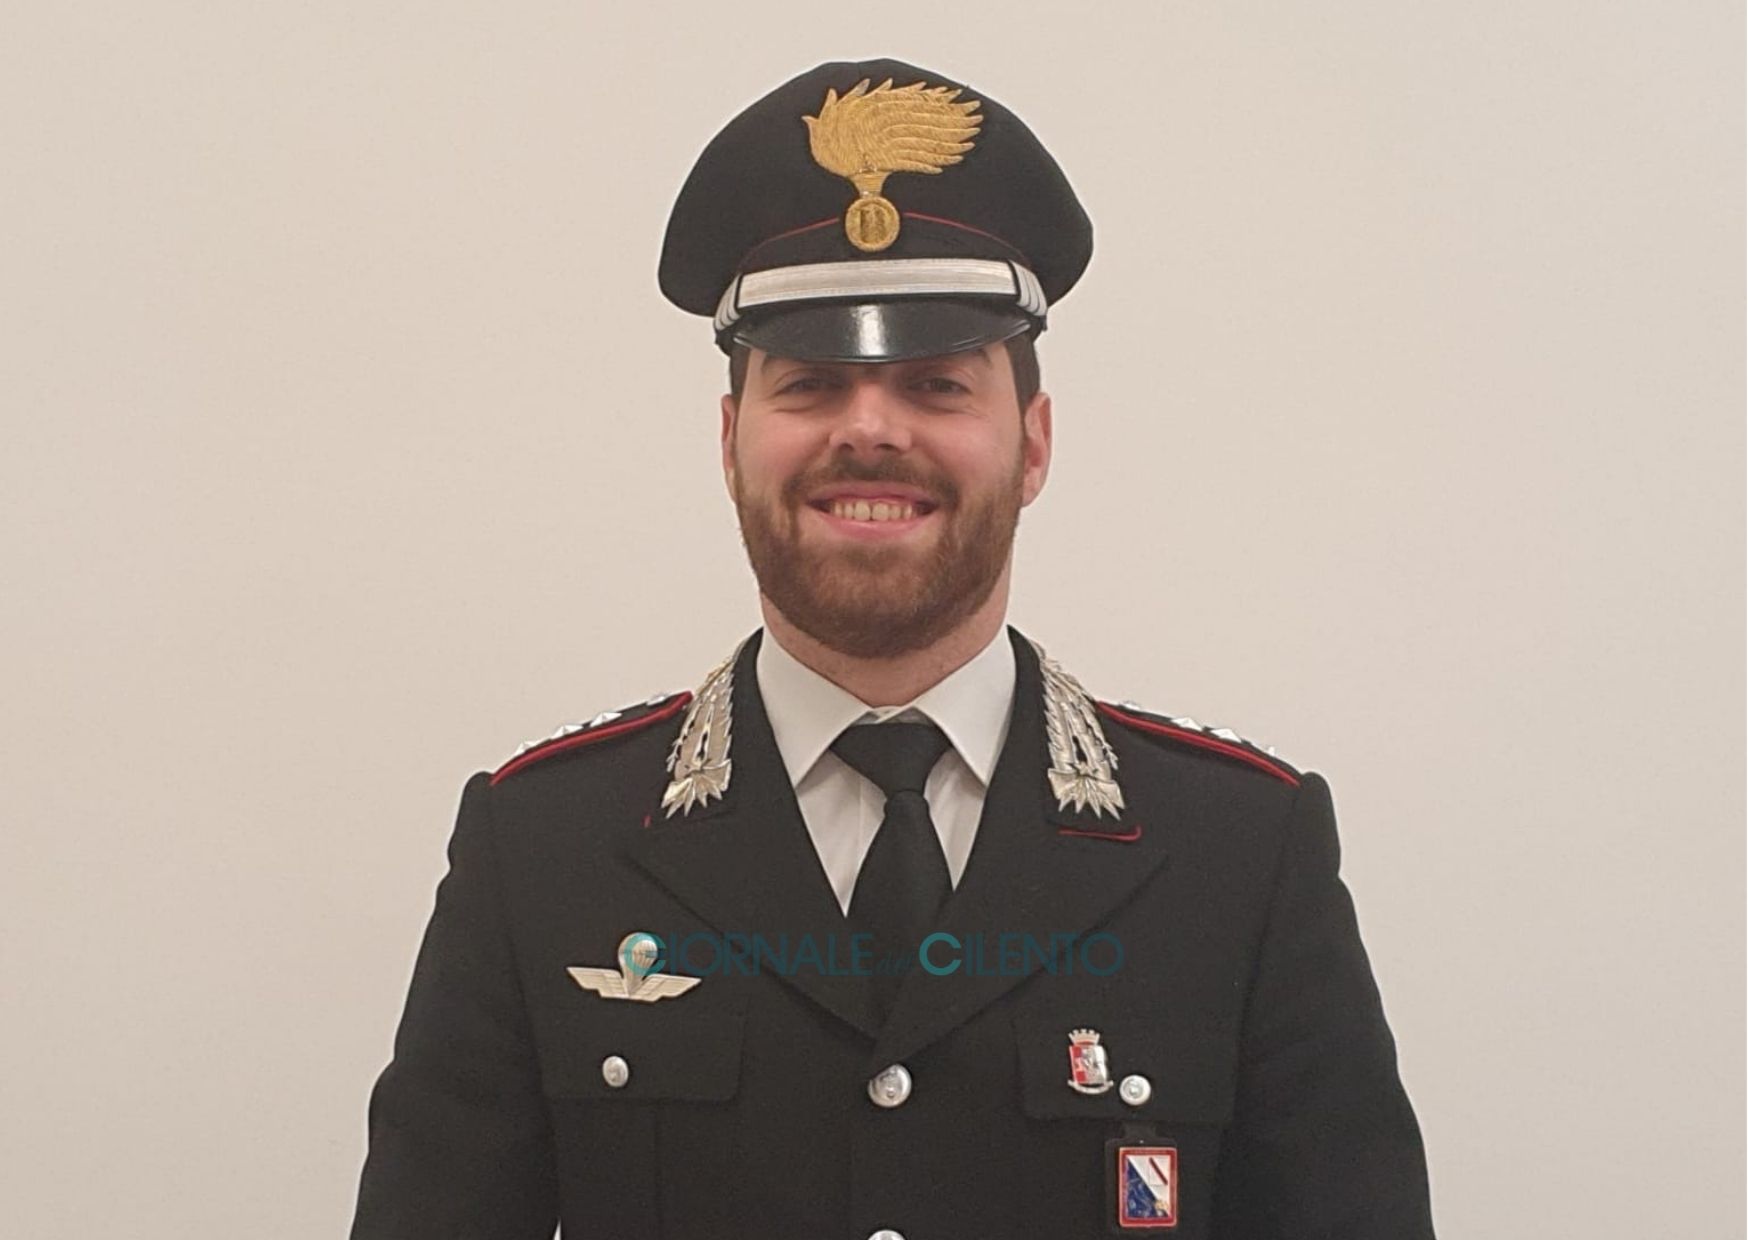 Il capitano Francesco Fedocci è il nuovo comandante della Compagnia Carabinieri di Sapri